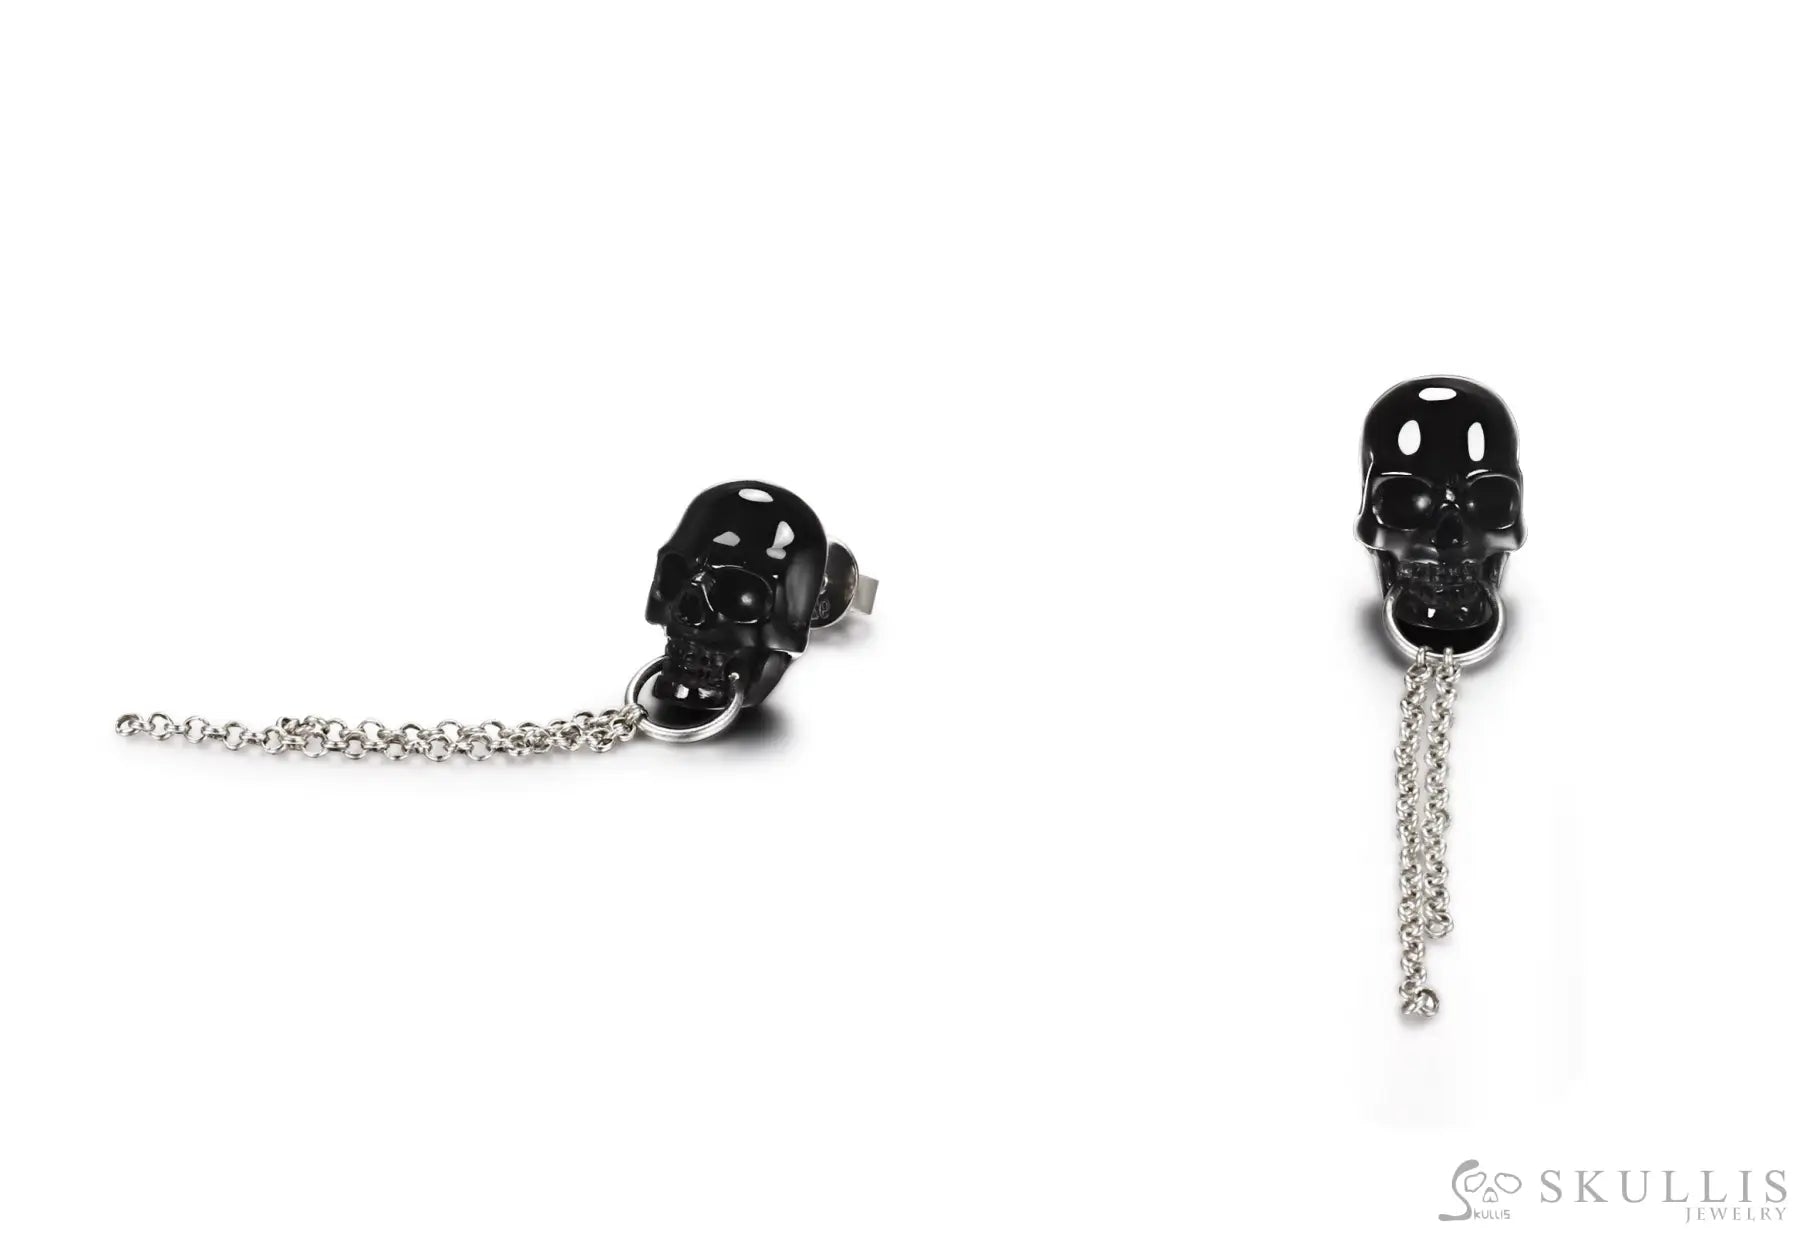 Gem Skull Earrings Of Black Obsidian Carved Skull In 925 Sterling Silver Skull